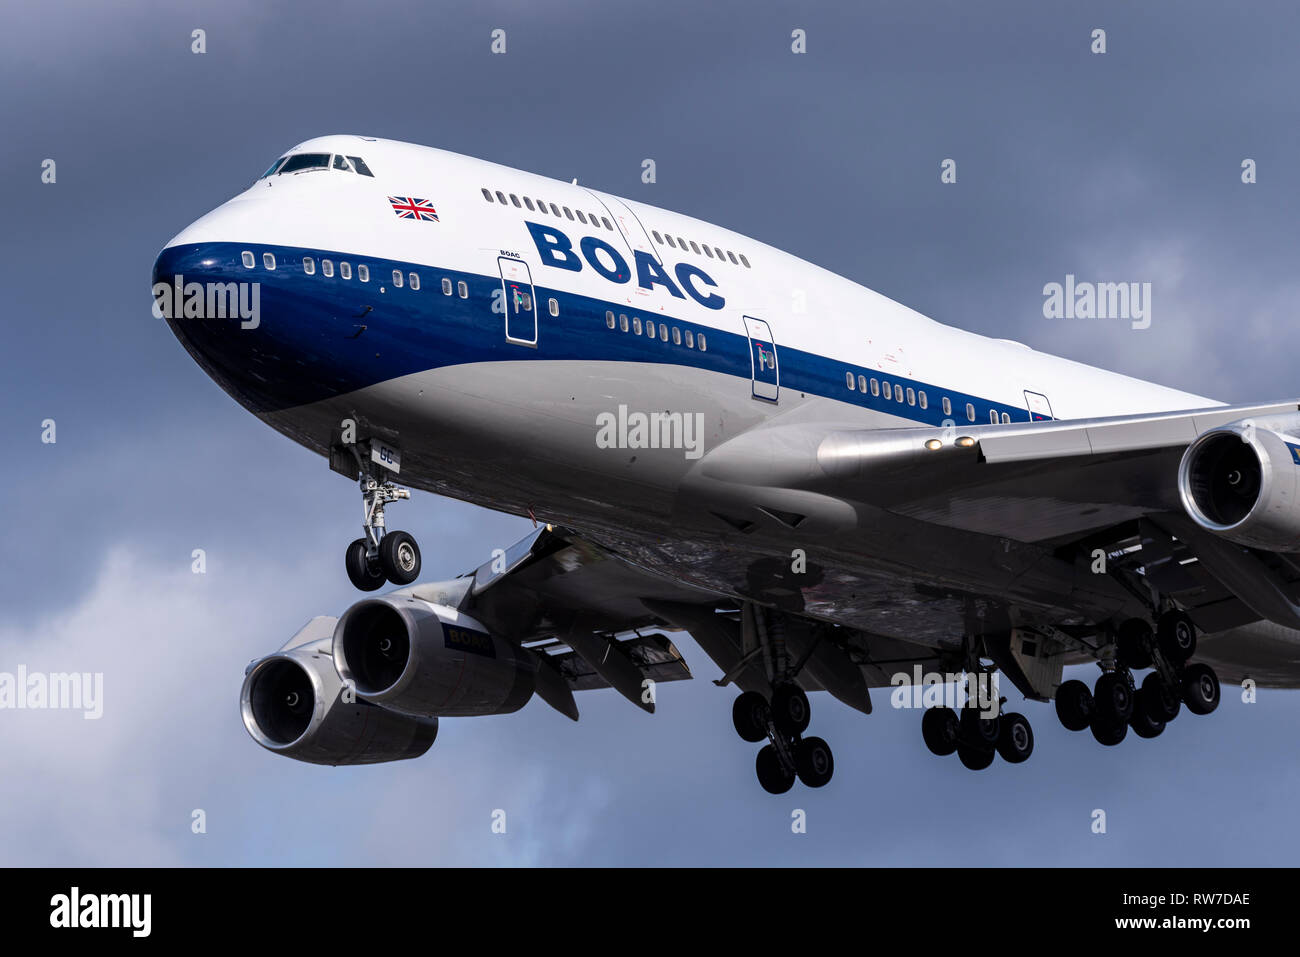 British Airways Boeing 747 jumbo getto G-BYGC in atterraggio a Londra Heathrow durante le tempeste, dipinta in BOAC retrò i colori per il centenario di BA Foto Stock